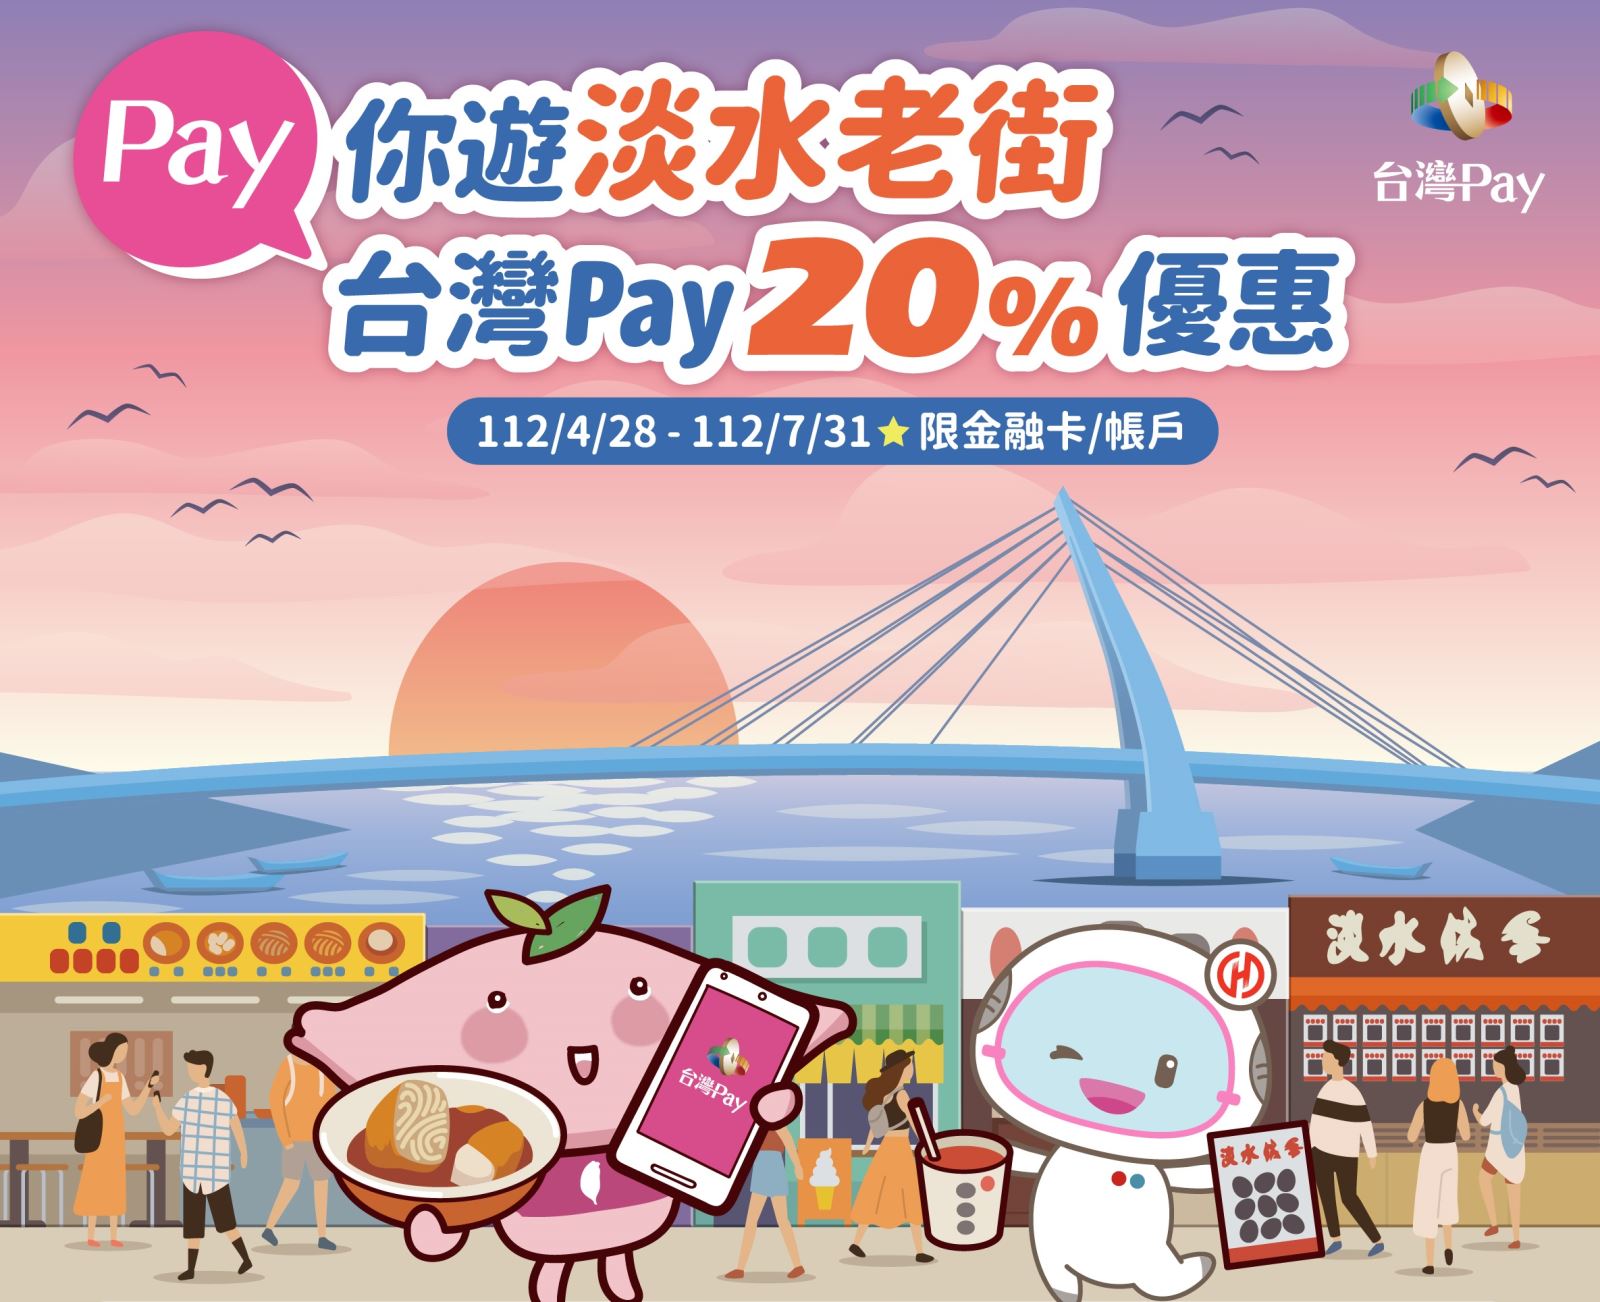 以「台灣 Pay」QR Code 掃碼支付，單筆消費不限金額可享 20%之現金回饋，每一金融卡號/帳戶於活動期間回饋上限新臺幣1,000 元。